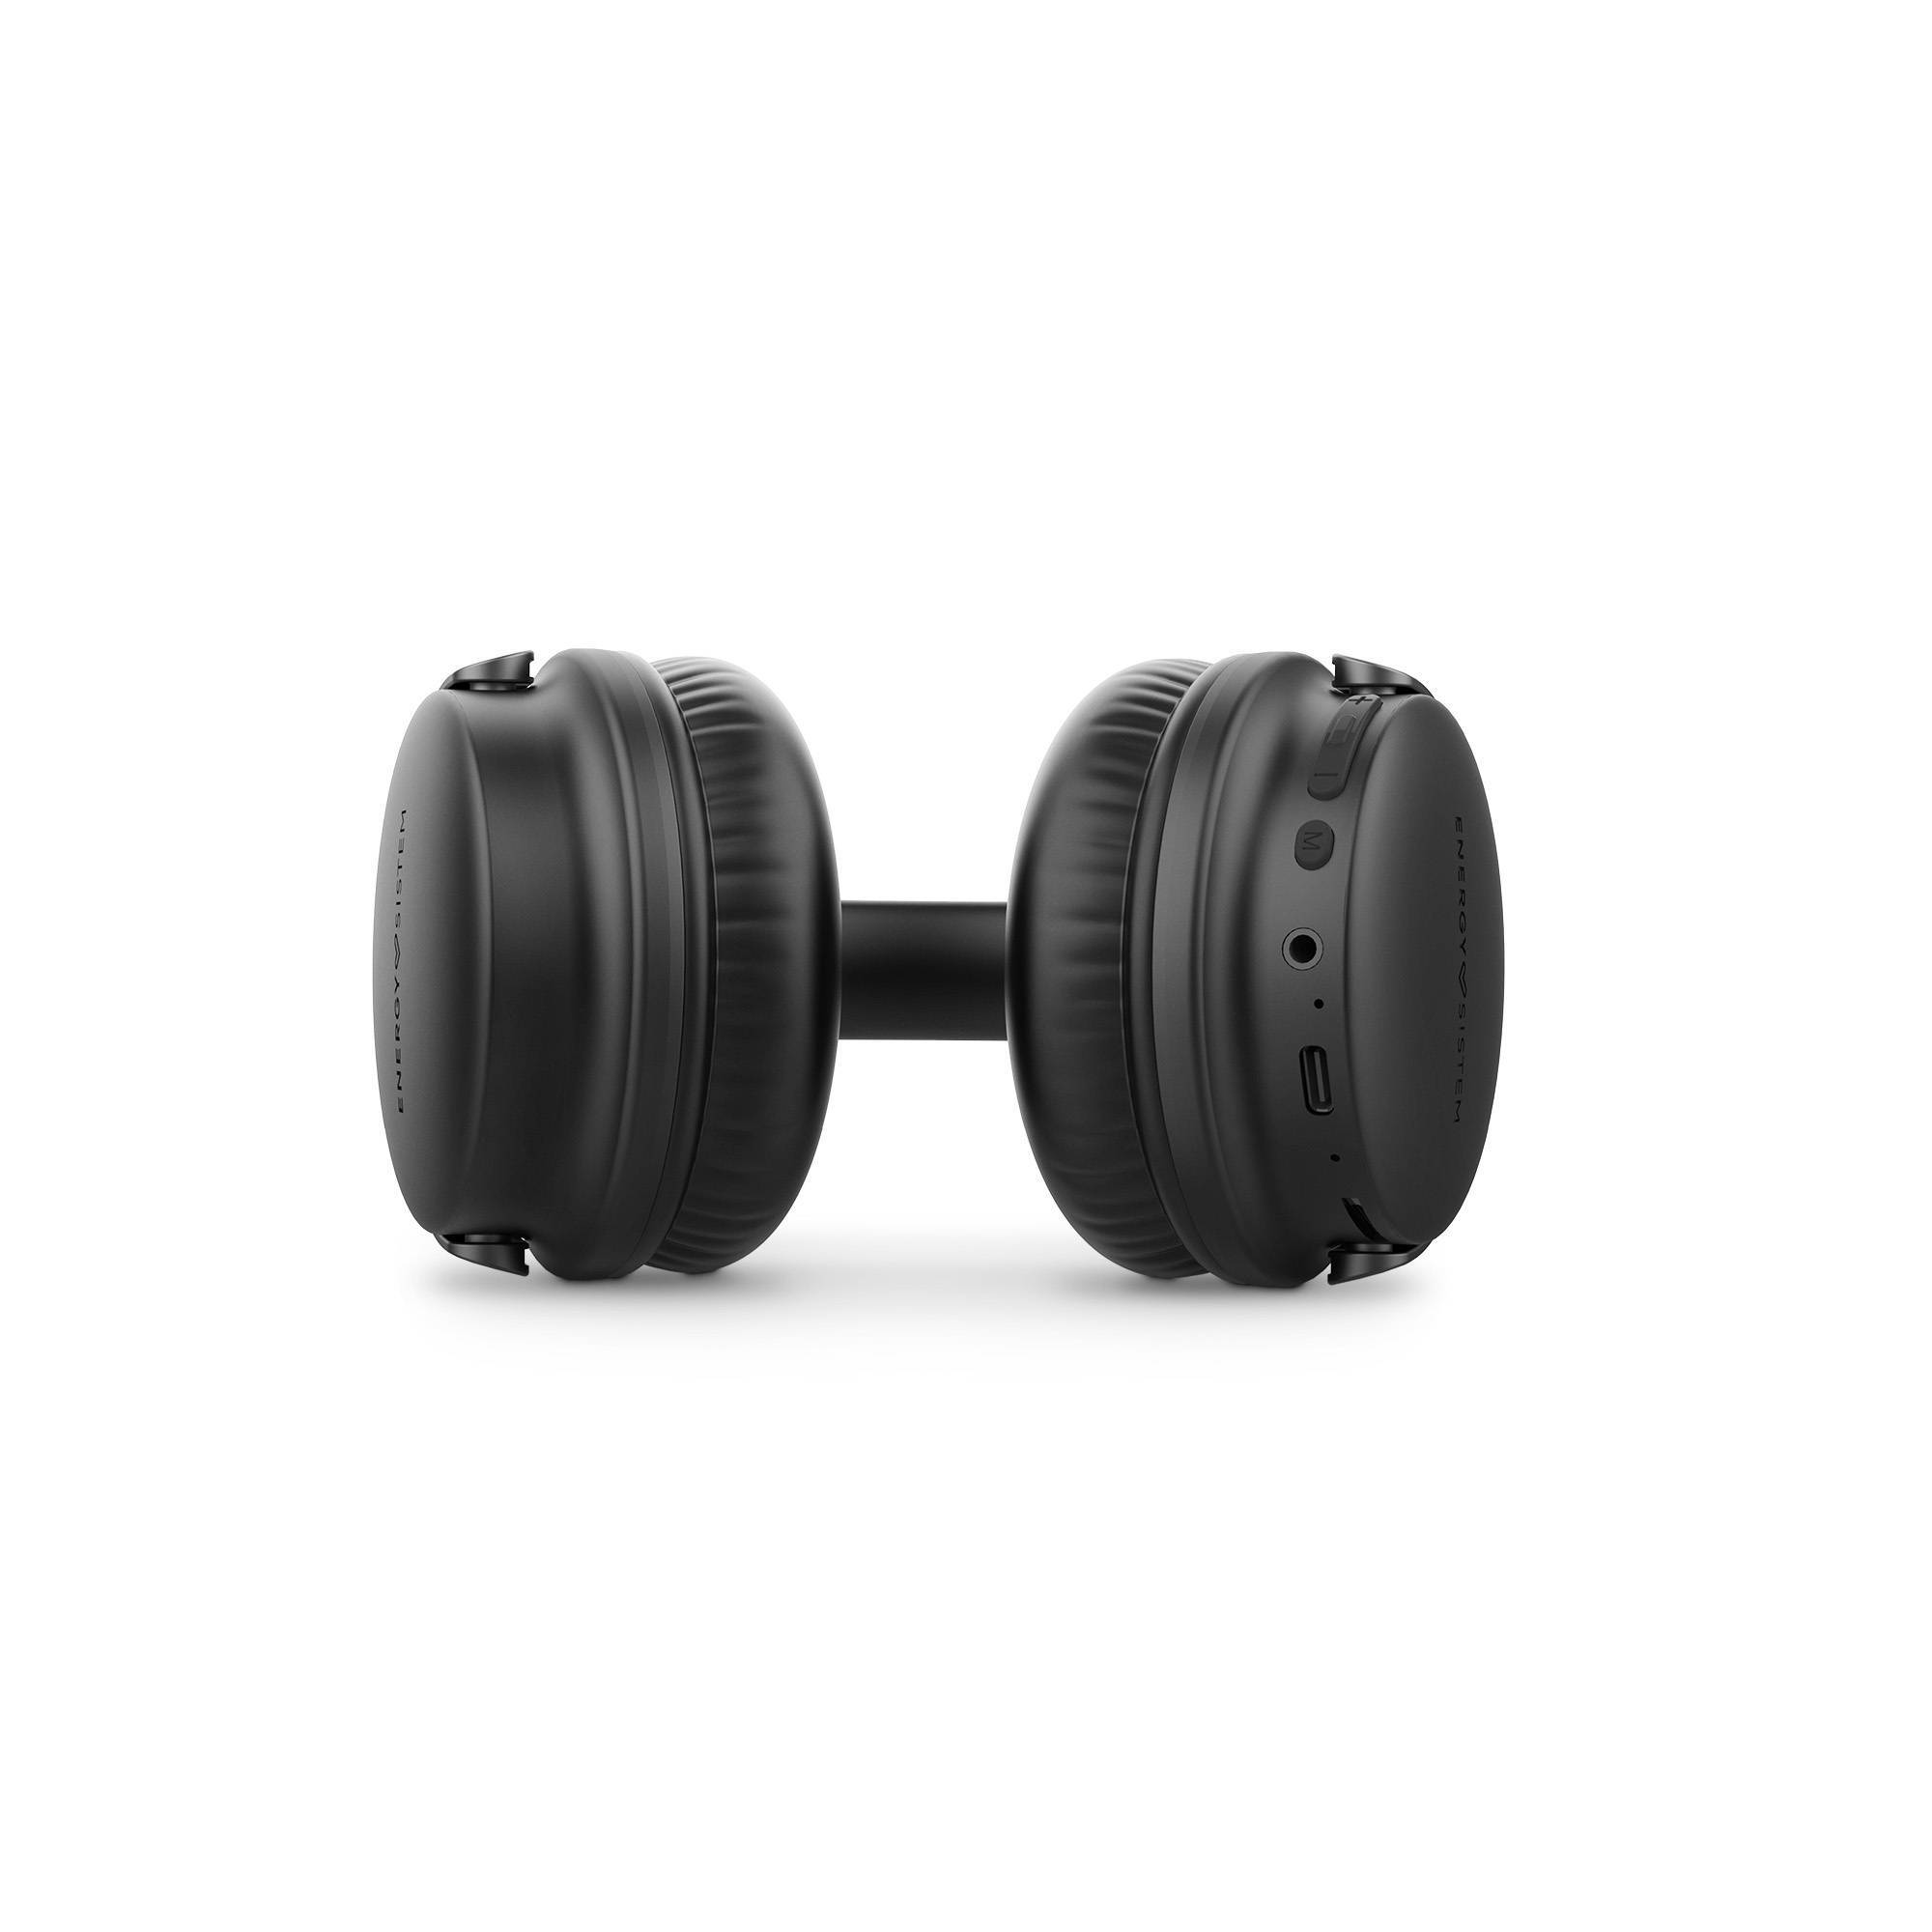 Bluetooth-Kopfhörer mit Ohrpolstern aus Proteinleder für mehr Komfort